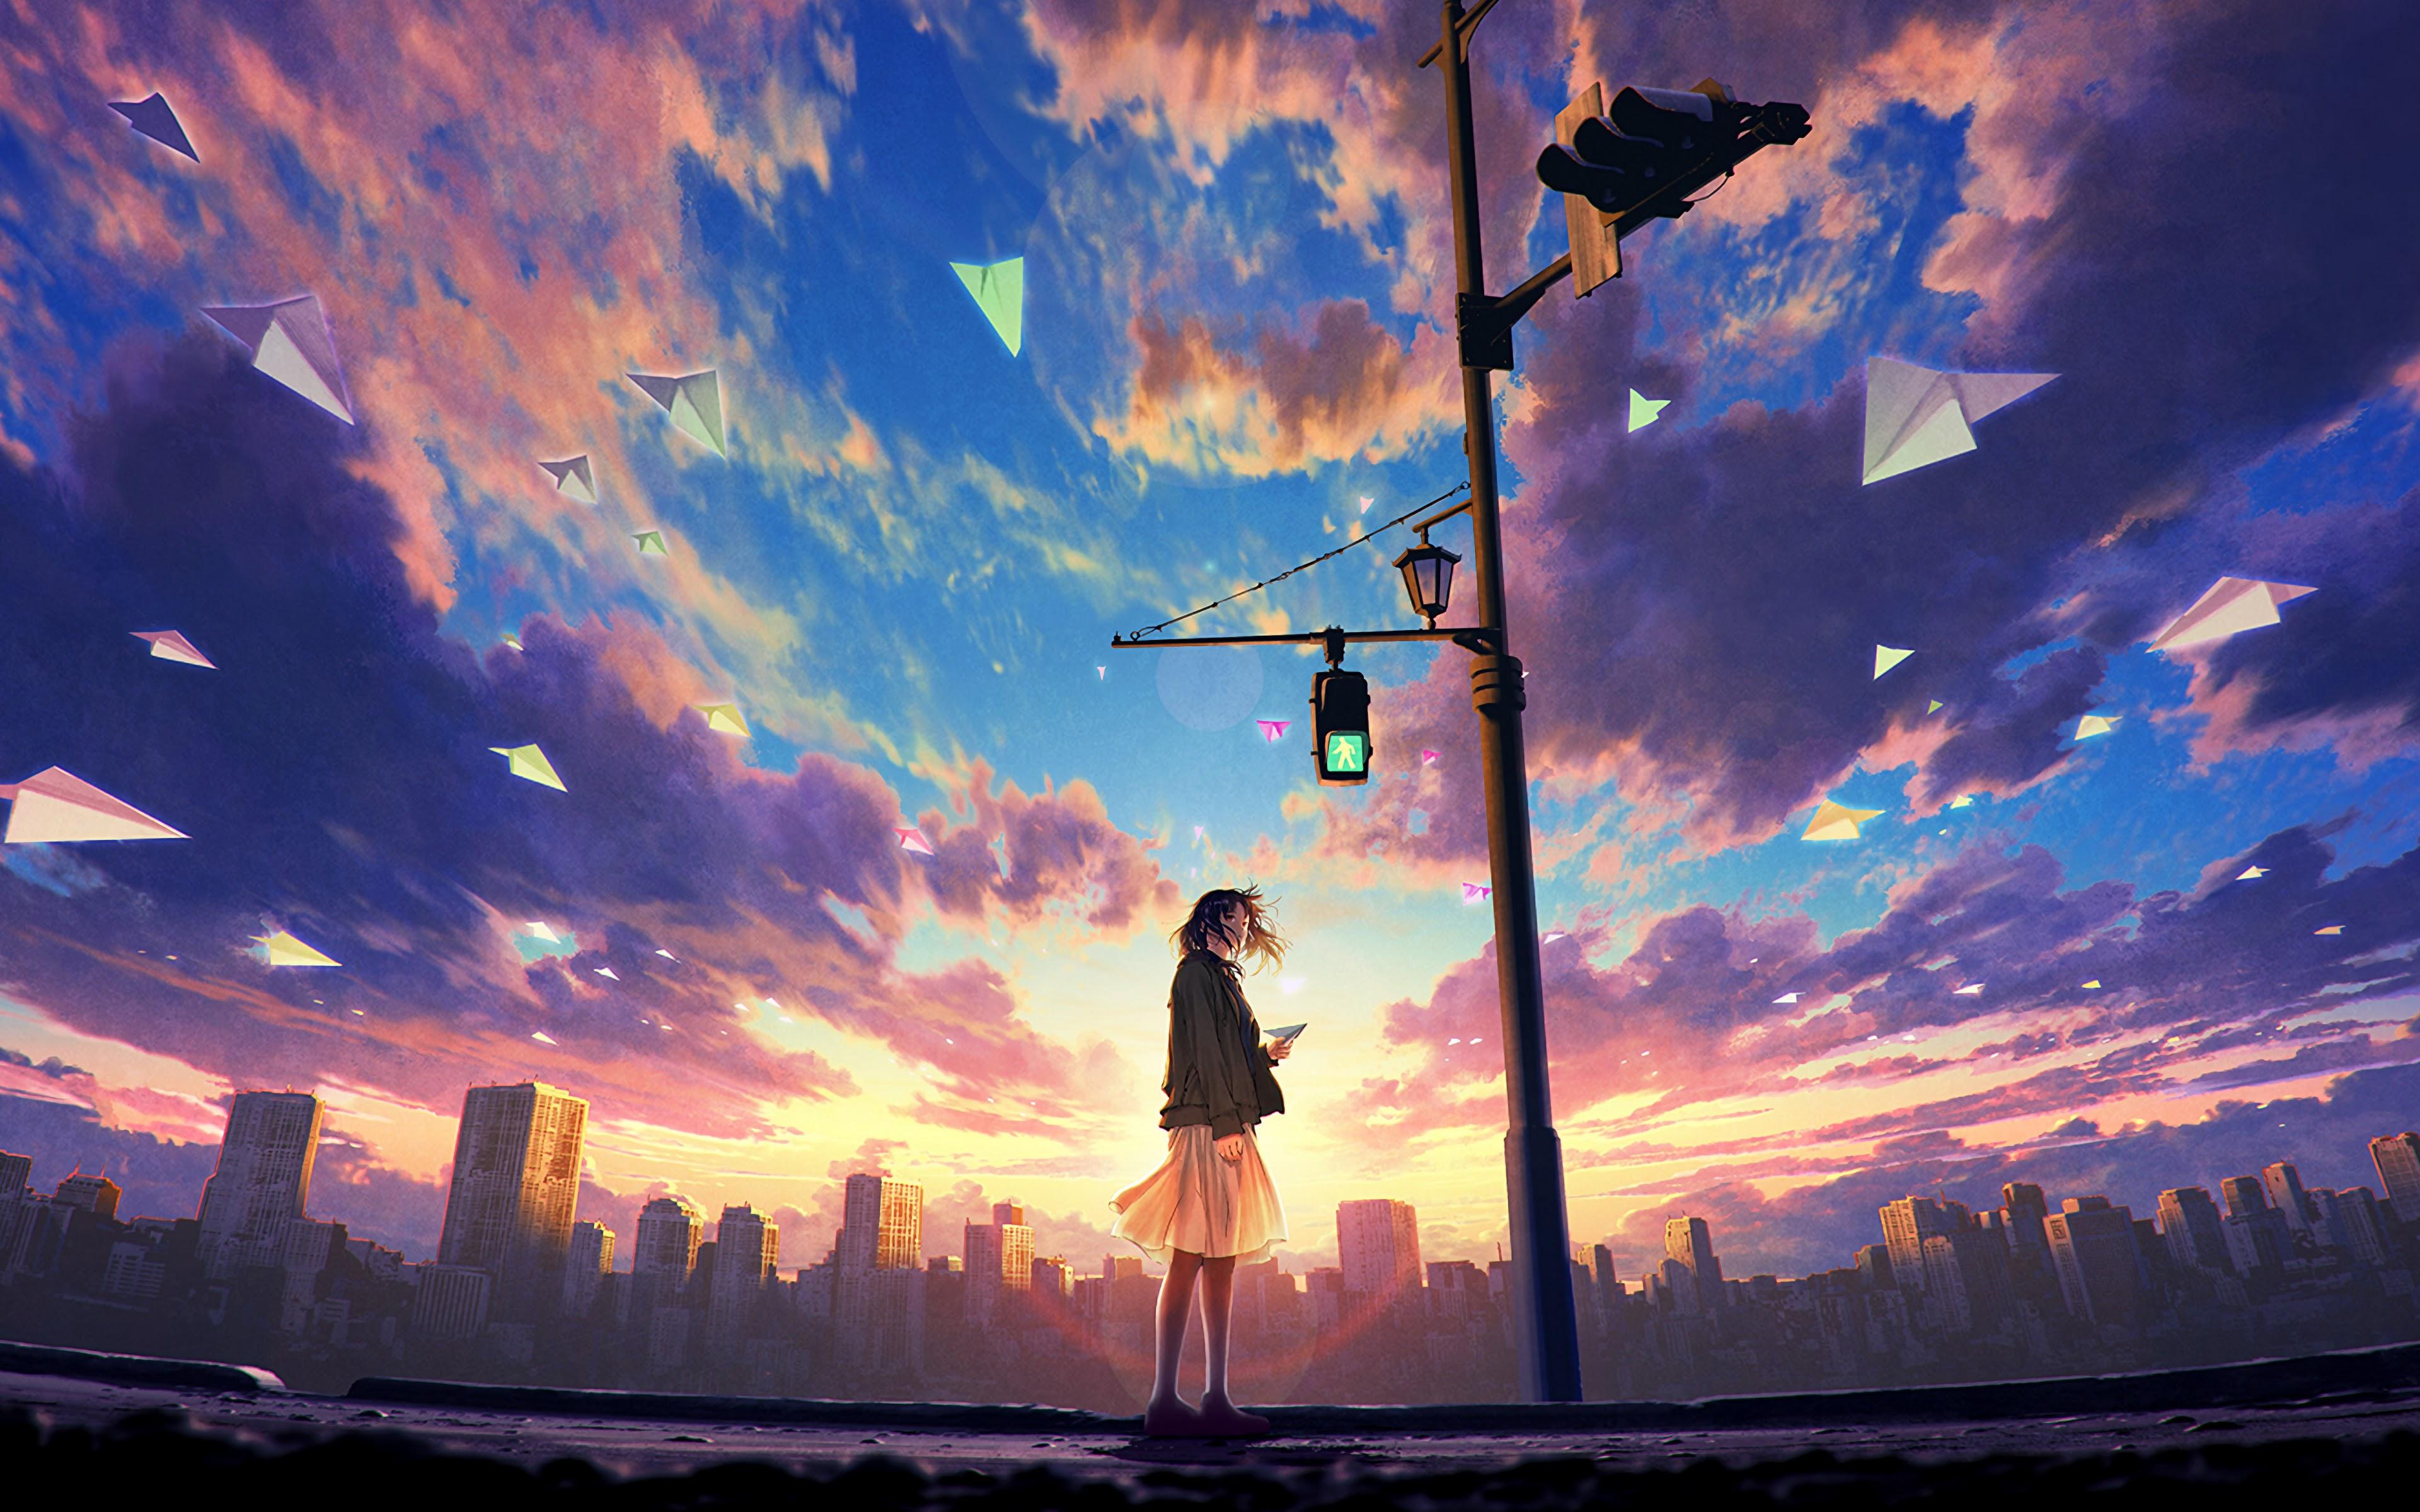 Anime Girl Sky Wallpapers - Top Free Anime Girl Sky Backgrounds ...